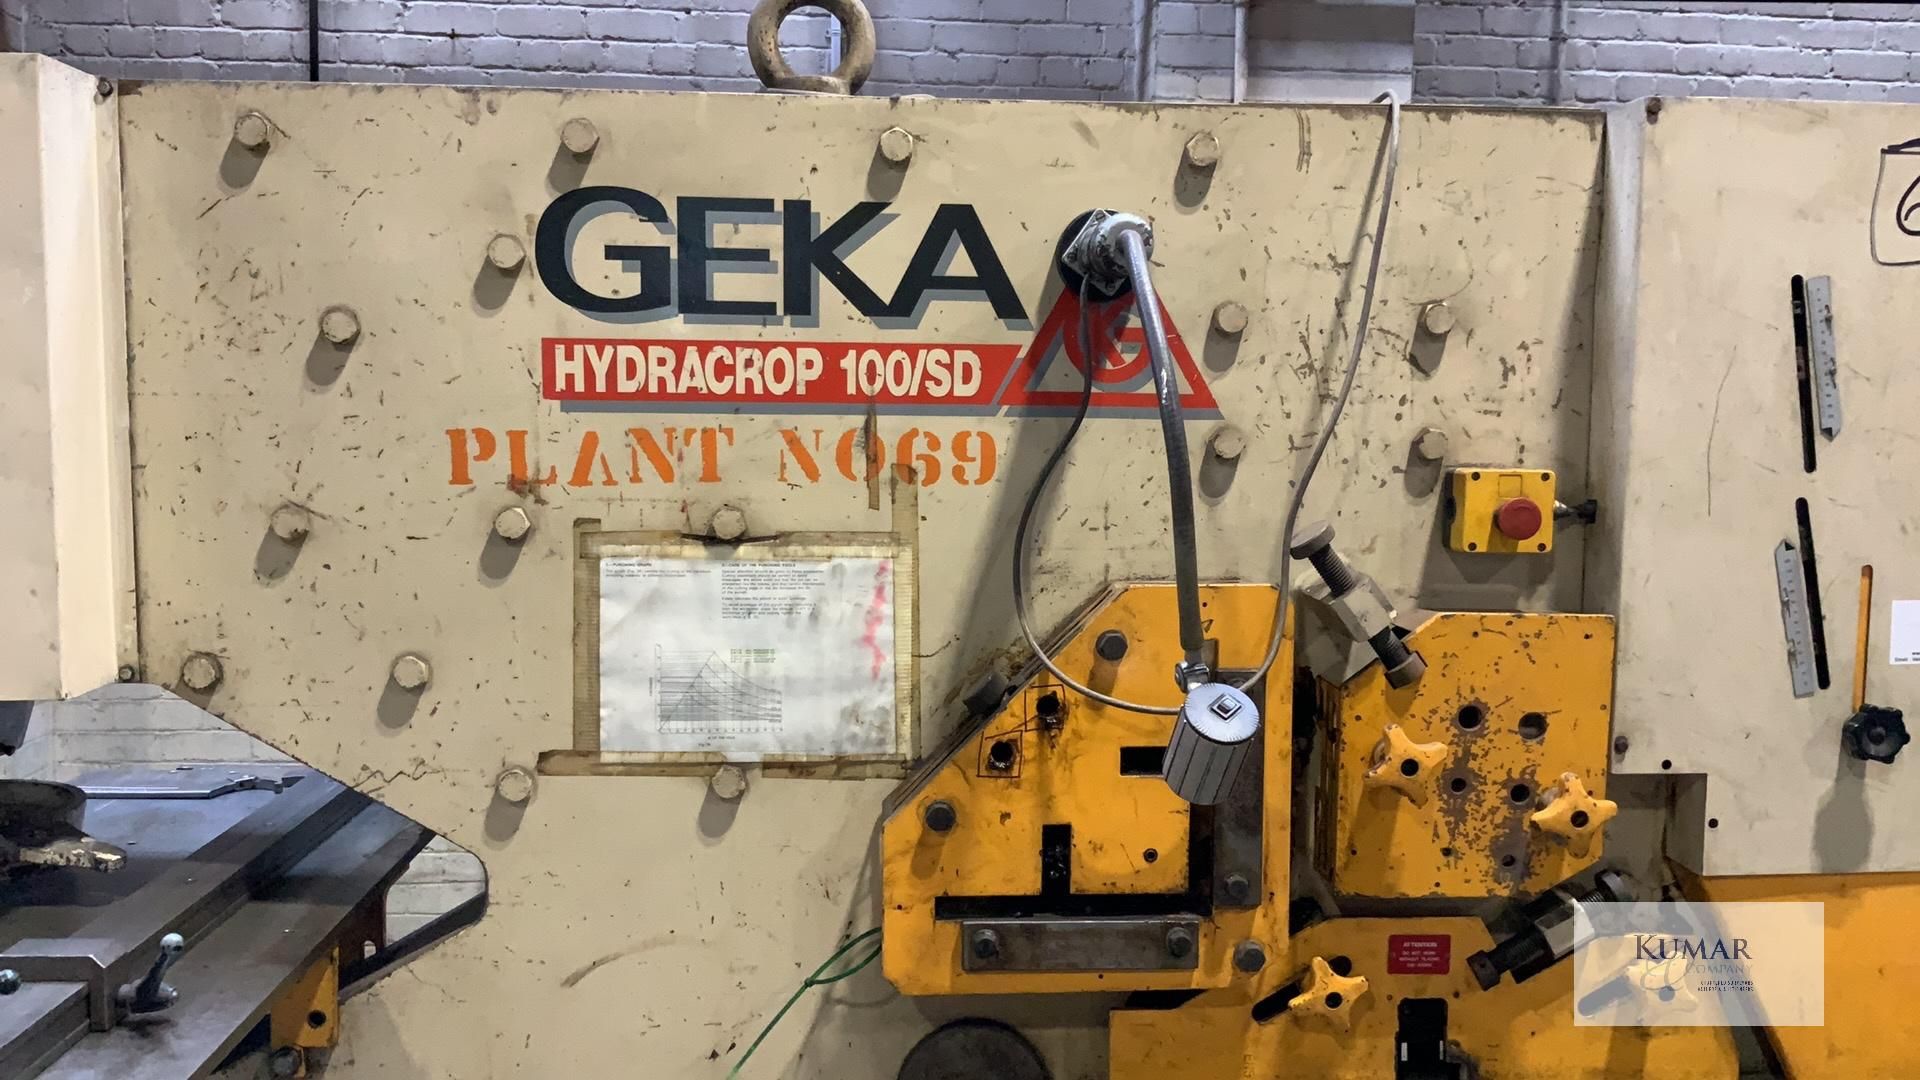 Geka Hydrocrop 100/SD Metal Worker, Serial No. 14395 - Image 15 of 30